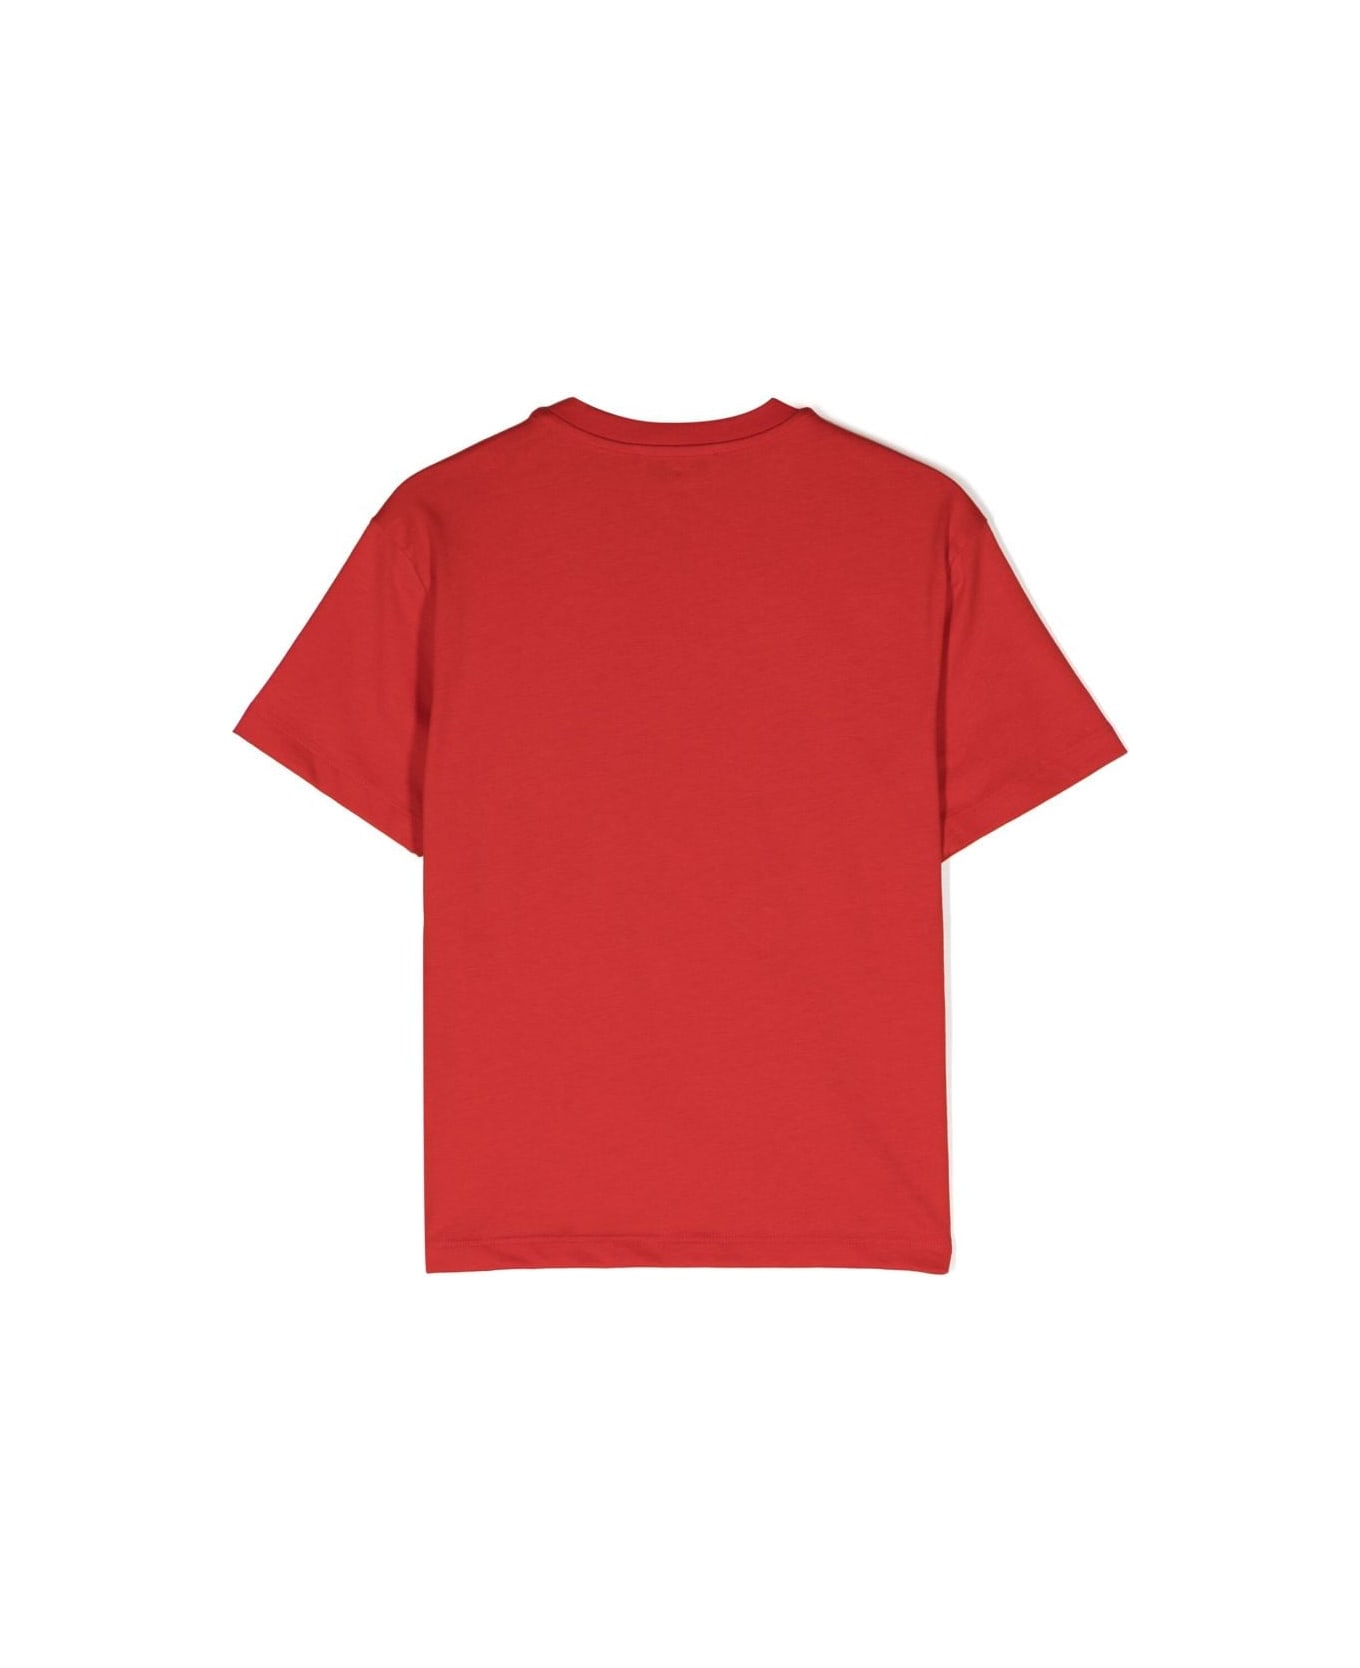 MSGM T-shirt Rossa In Jersey Di Cotone Bambino - Rosso